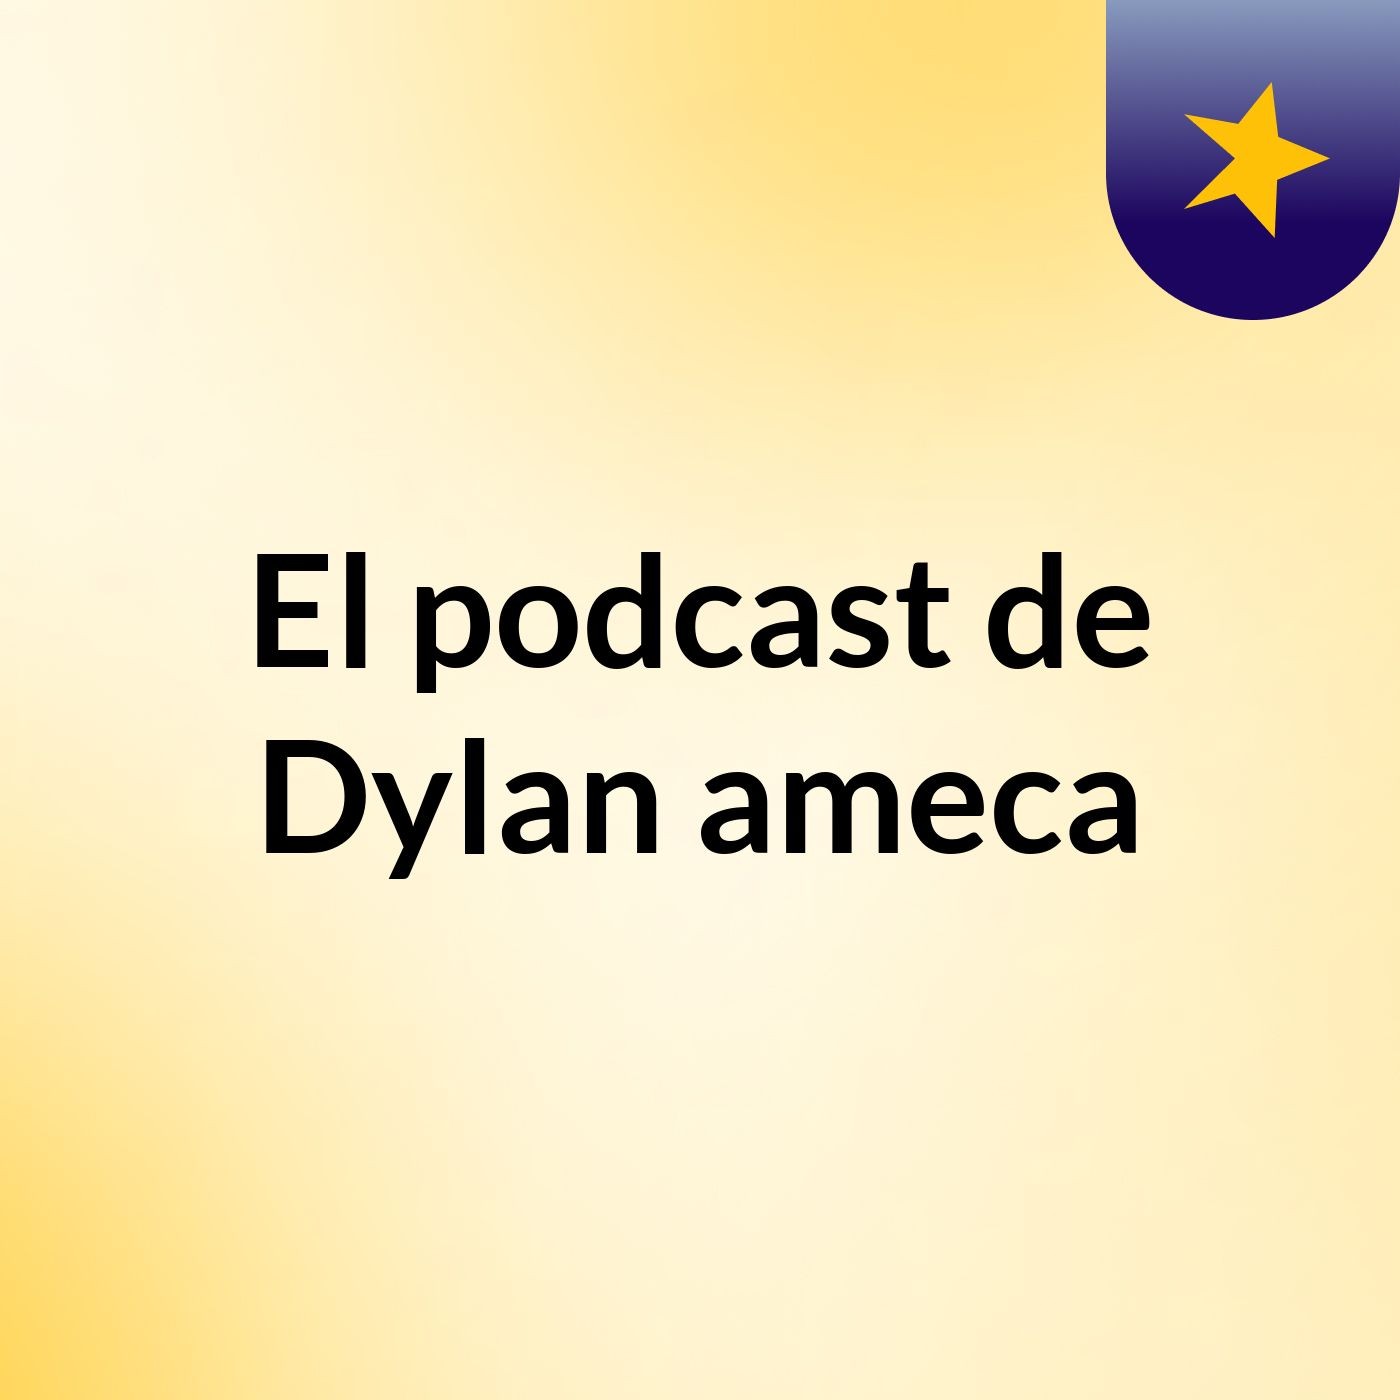 El podcast de Dylan ameca